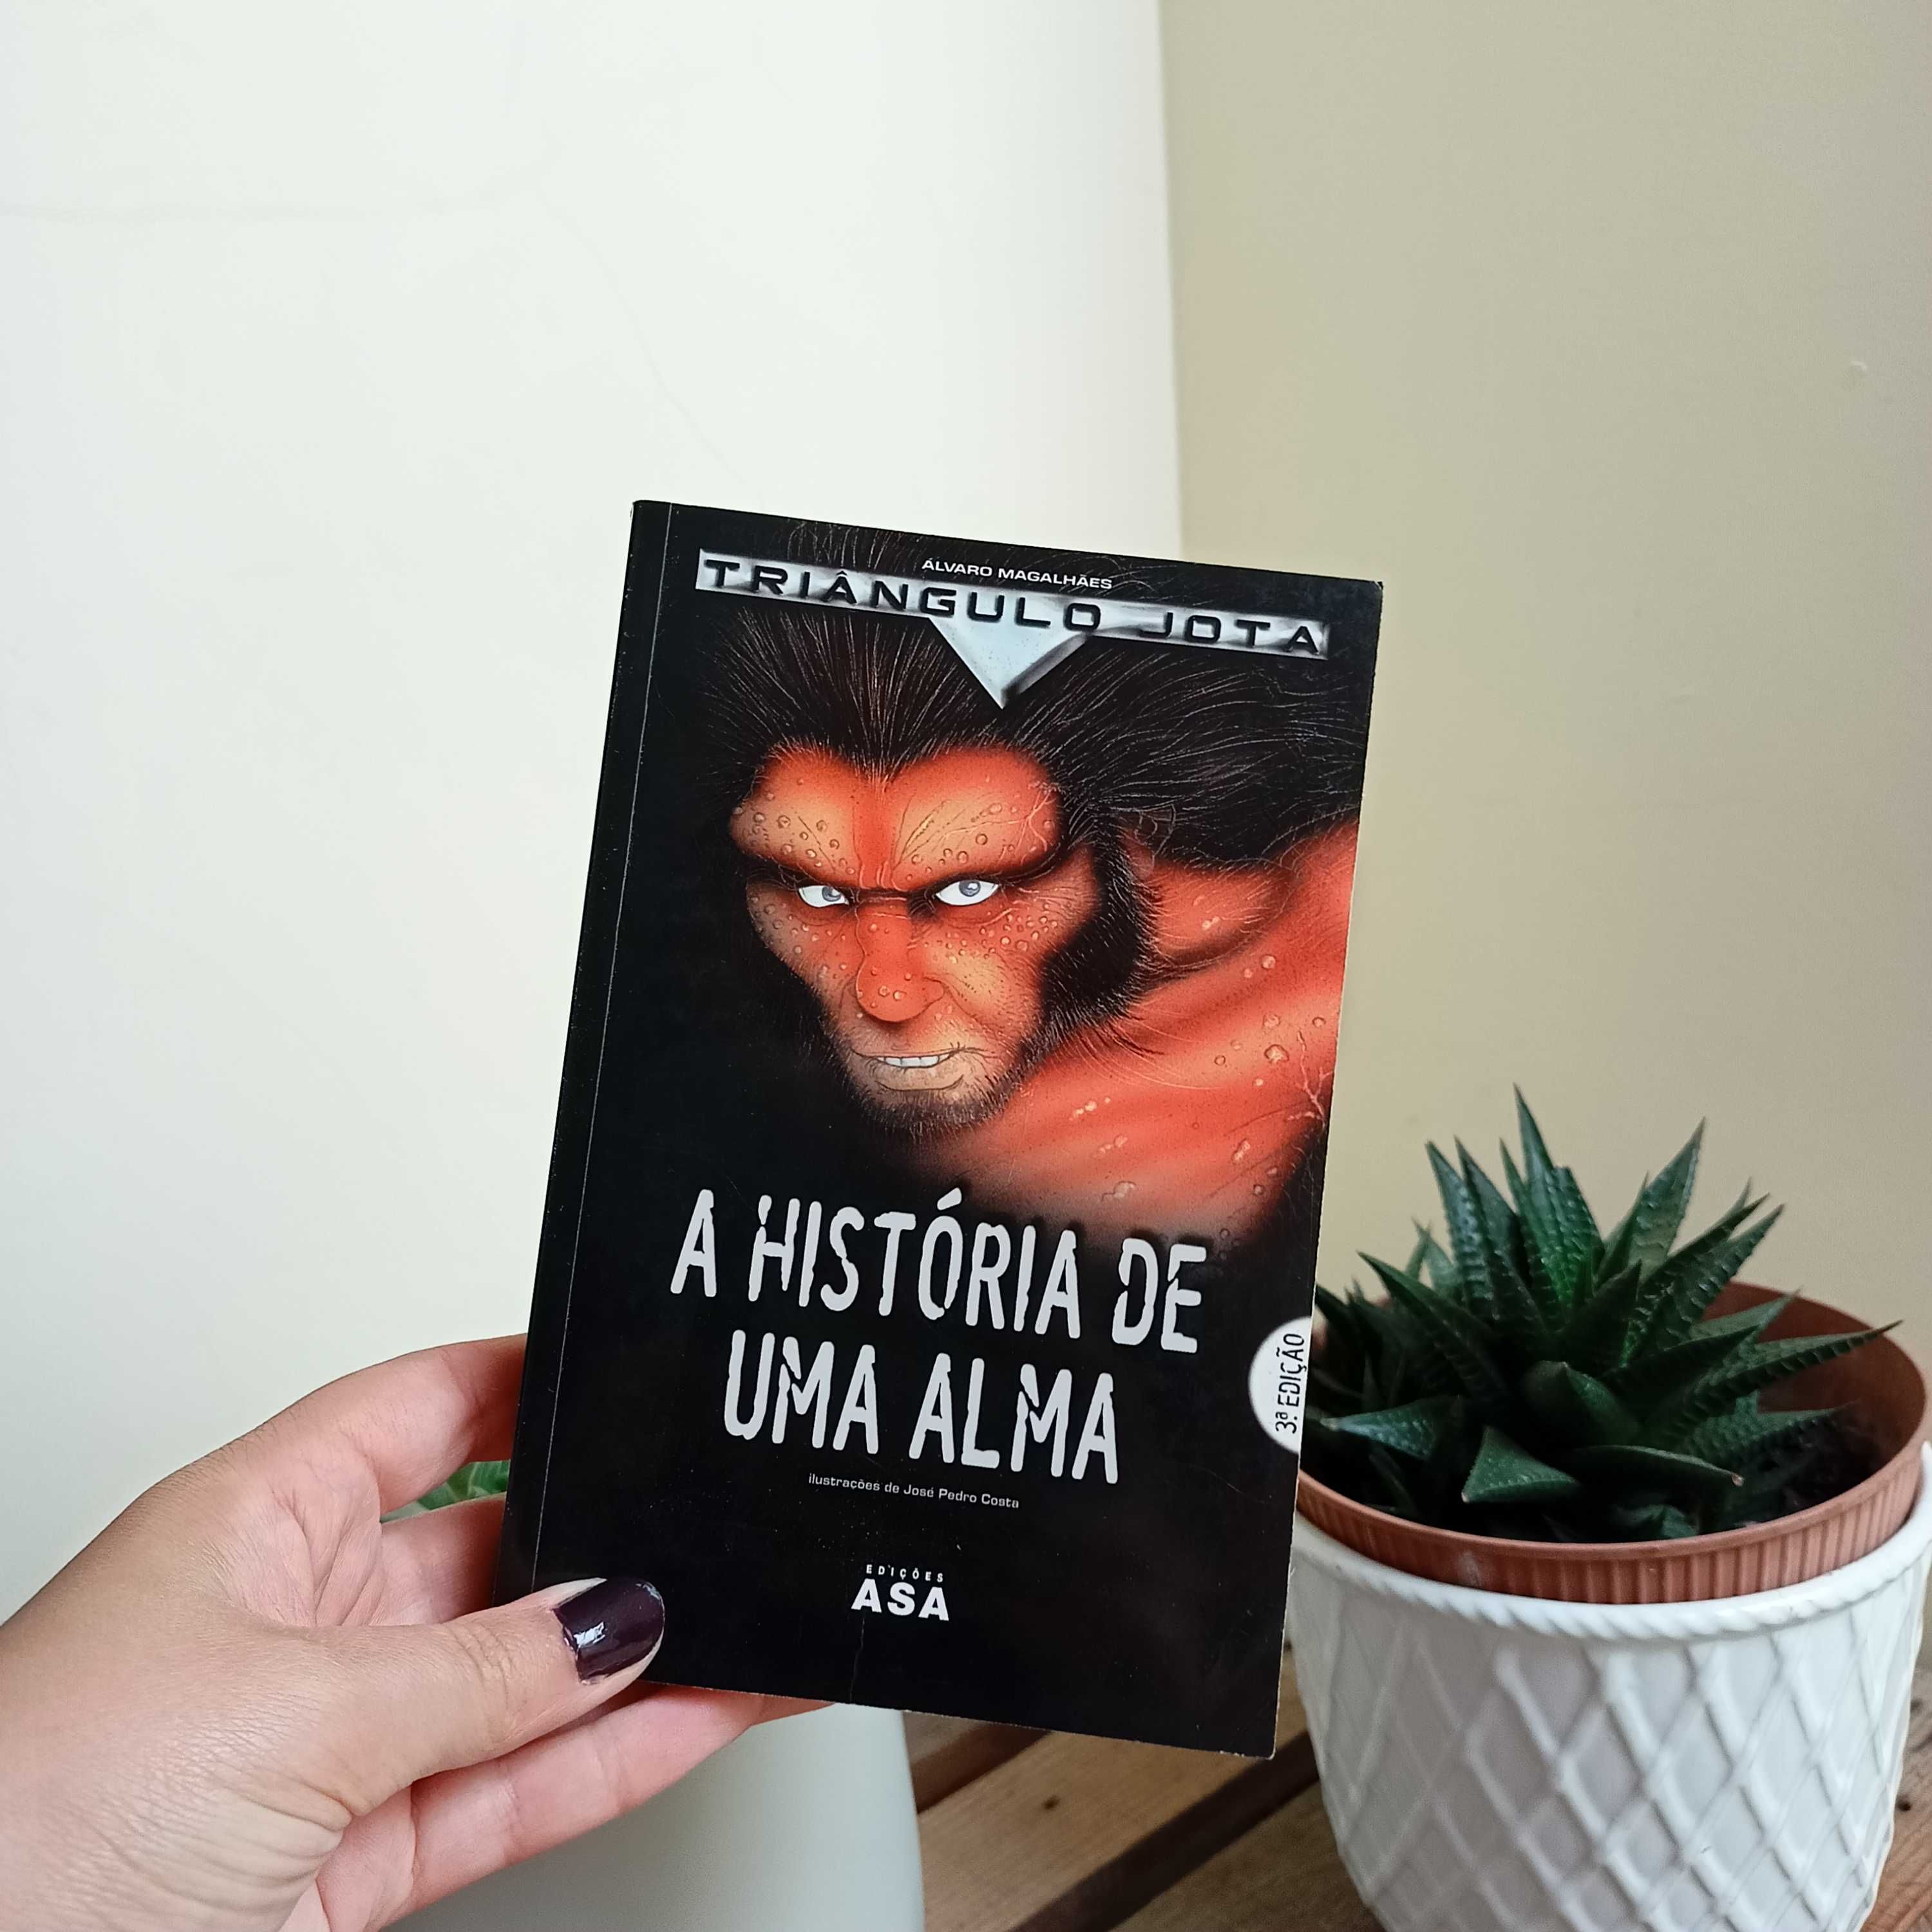 "A História de uma Alma", de Álvaro Magalhães